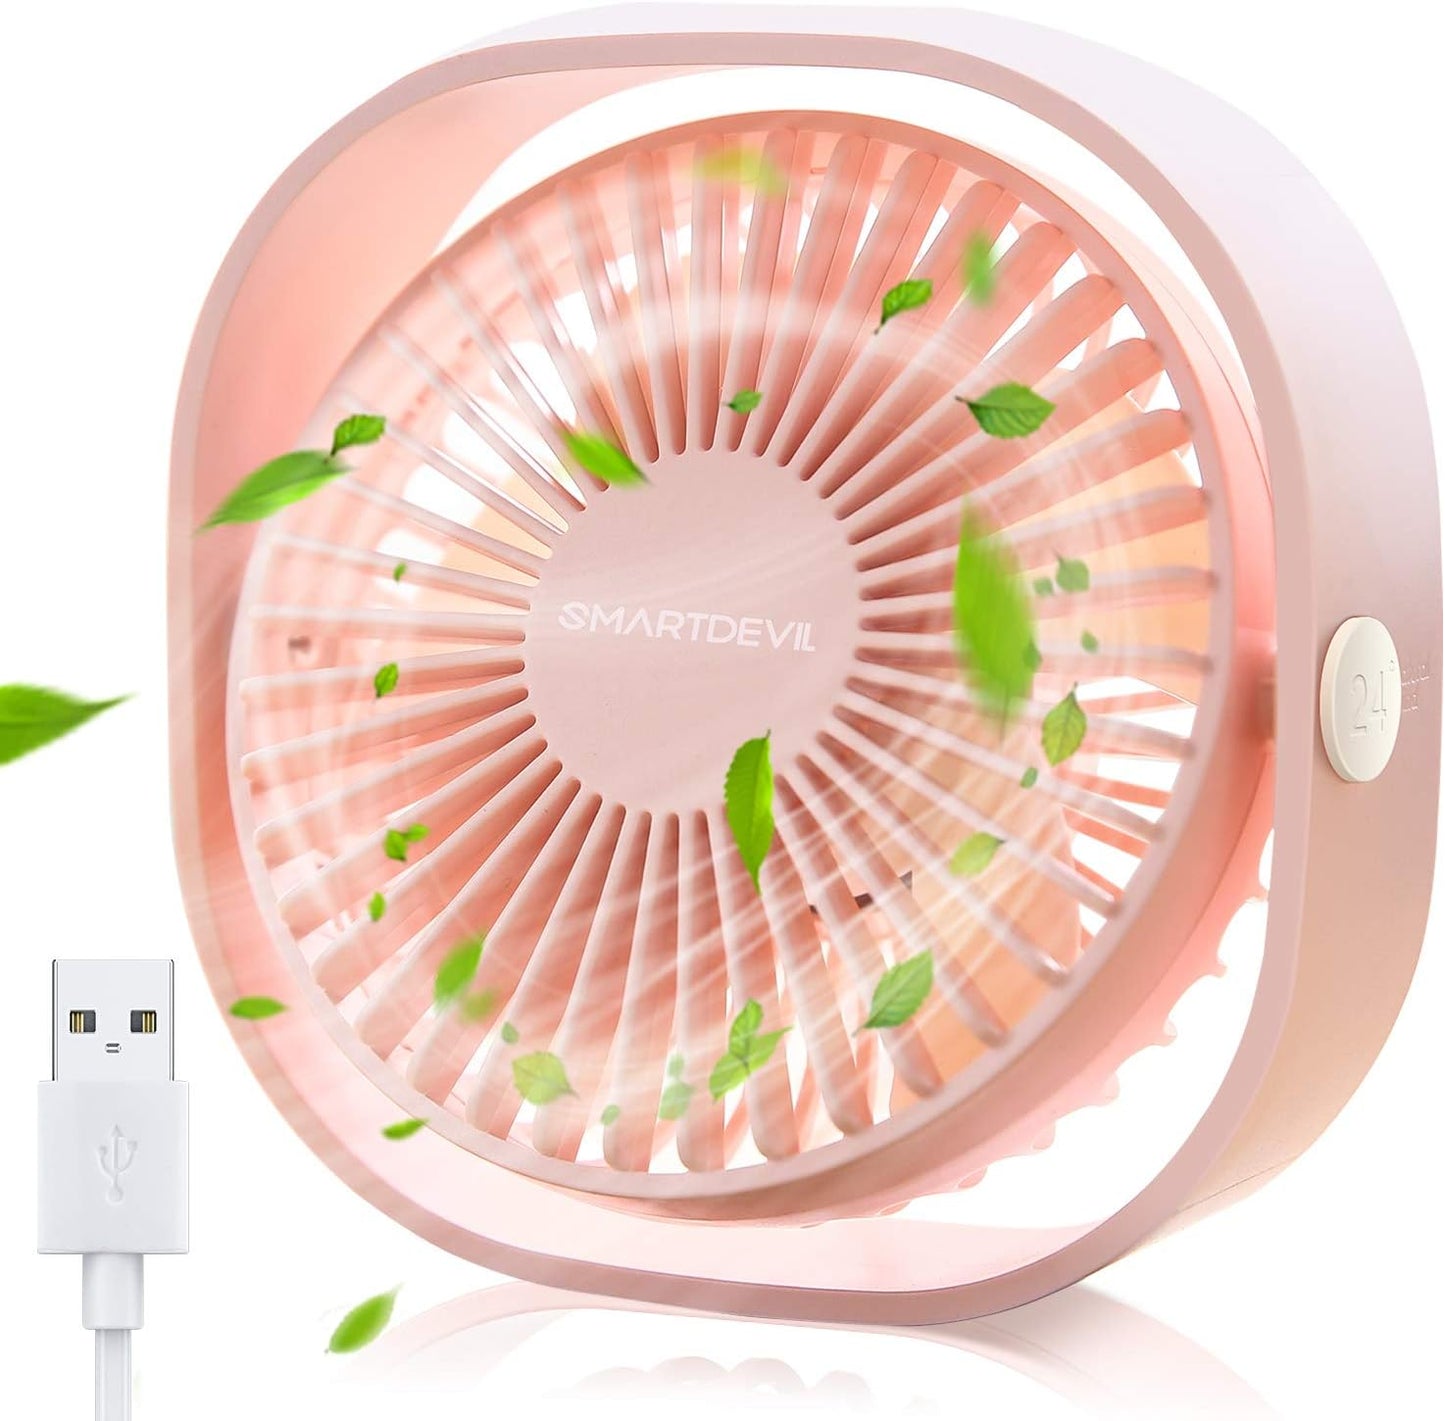 SmartDevil Pequeño ventilador de escritorio USB personal, ventilador de mesa de escritorio portátil de 3 velocidades alimentado por USB, viento fuerte, funcionamiento silencioso, para el hogar, oficina, coche, viajes al aire libre (rosa cereza)